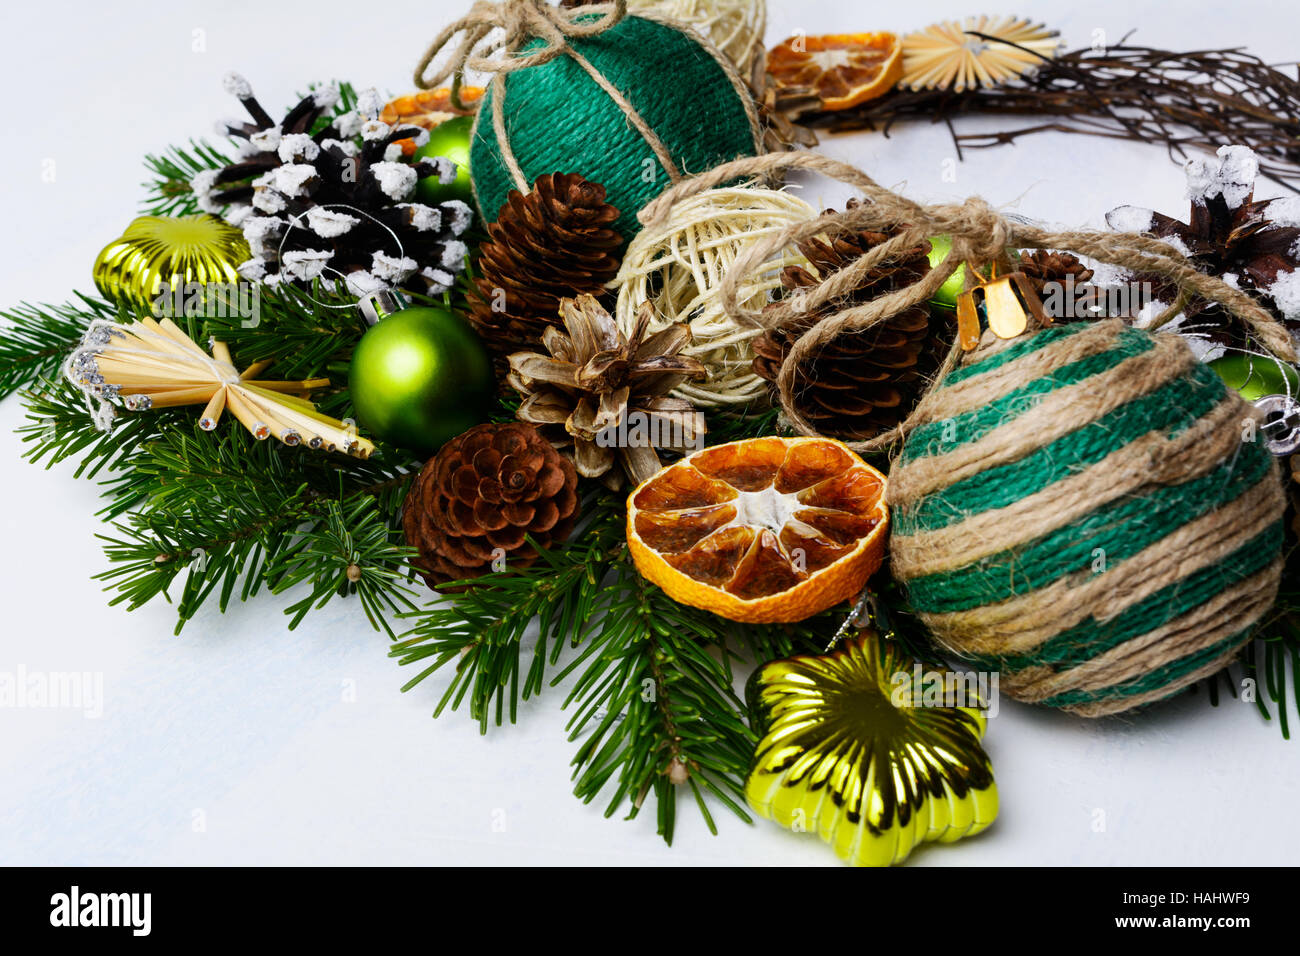 Arrangement de Noël avec des ornements rustiques et des tranches d'orange séchée. Vacances de Noël décoration avec des branches de sapin. Banque D'Images